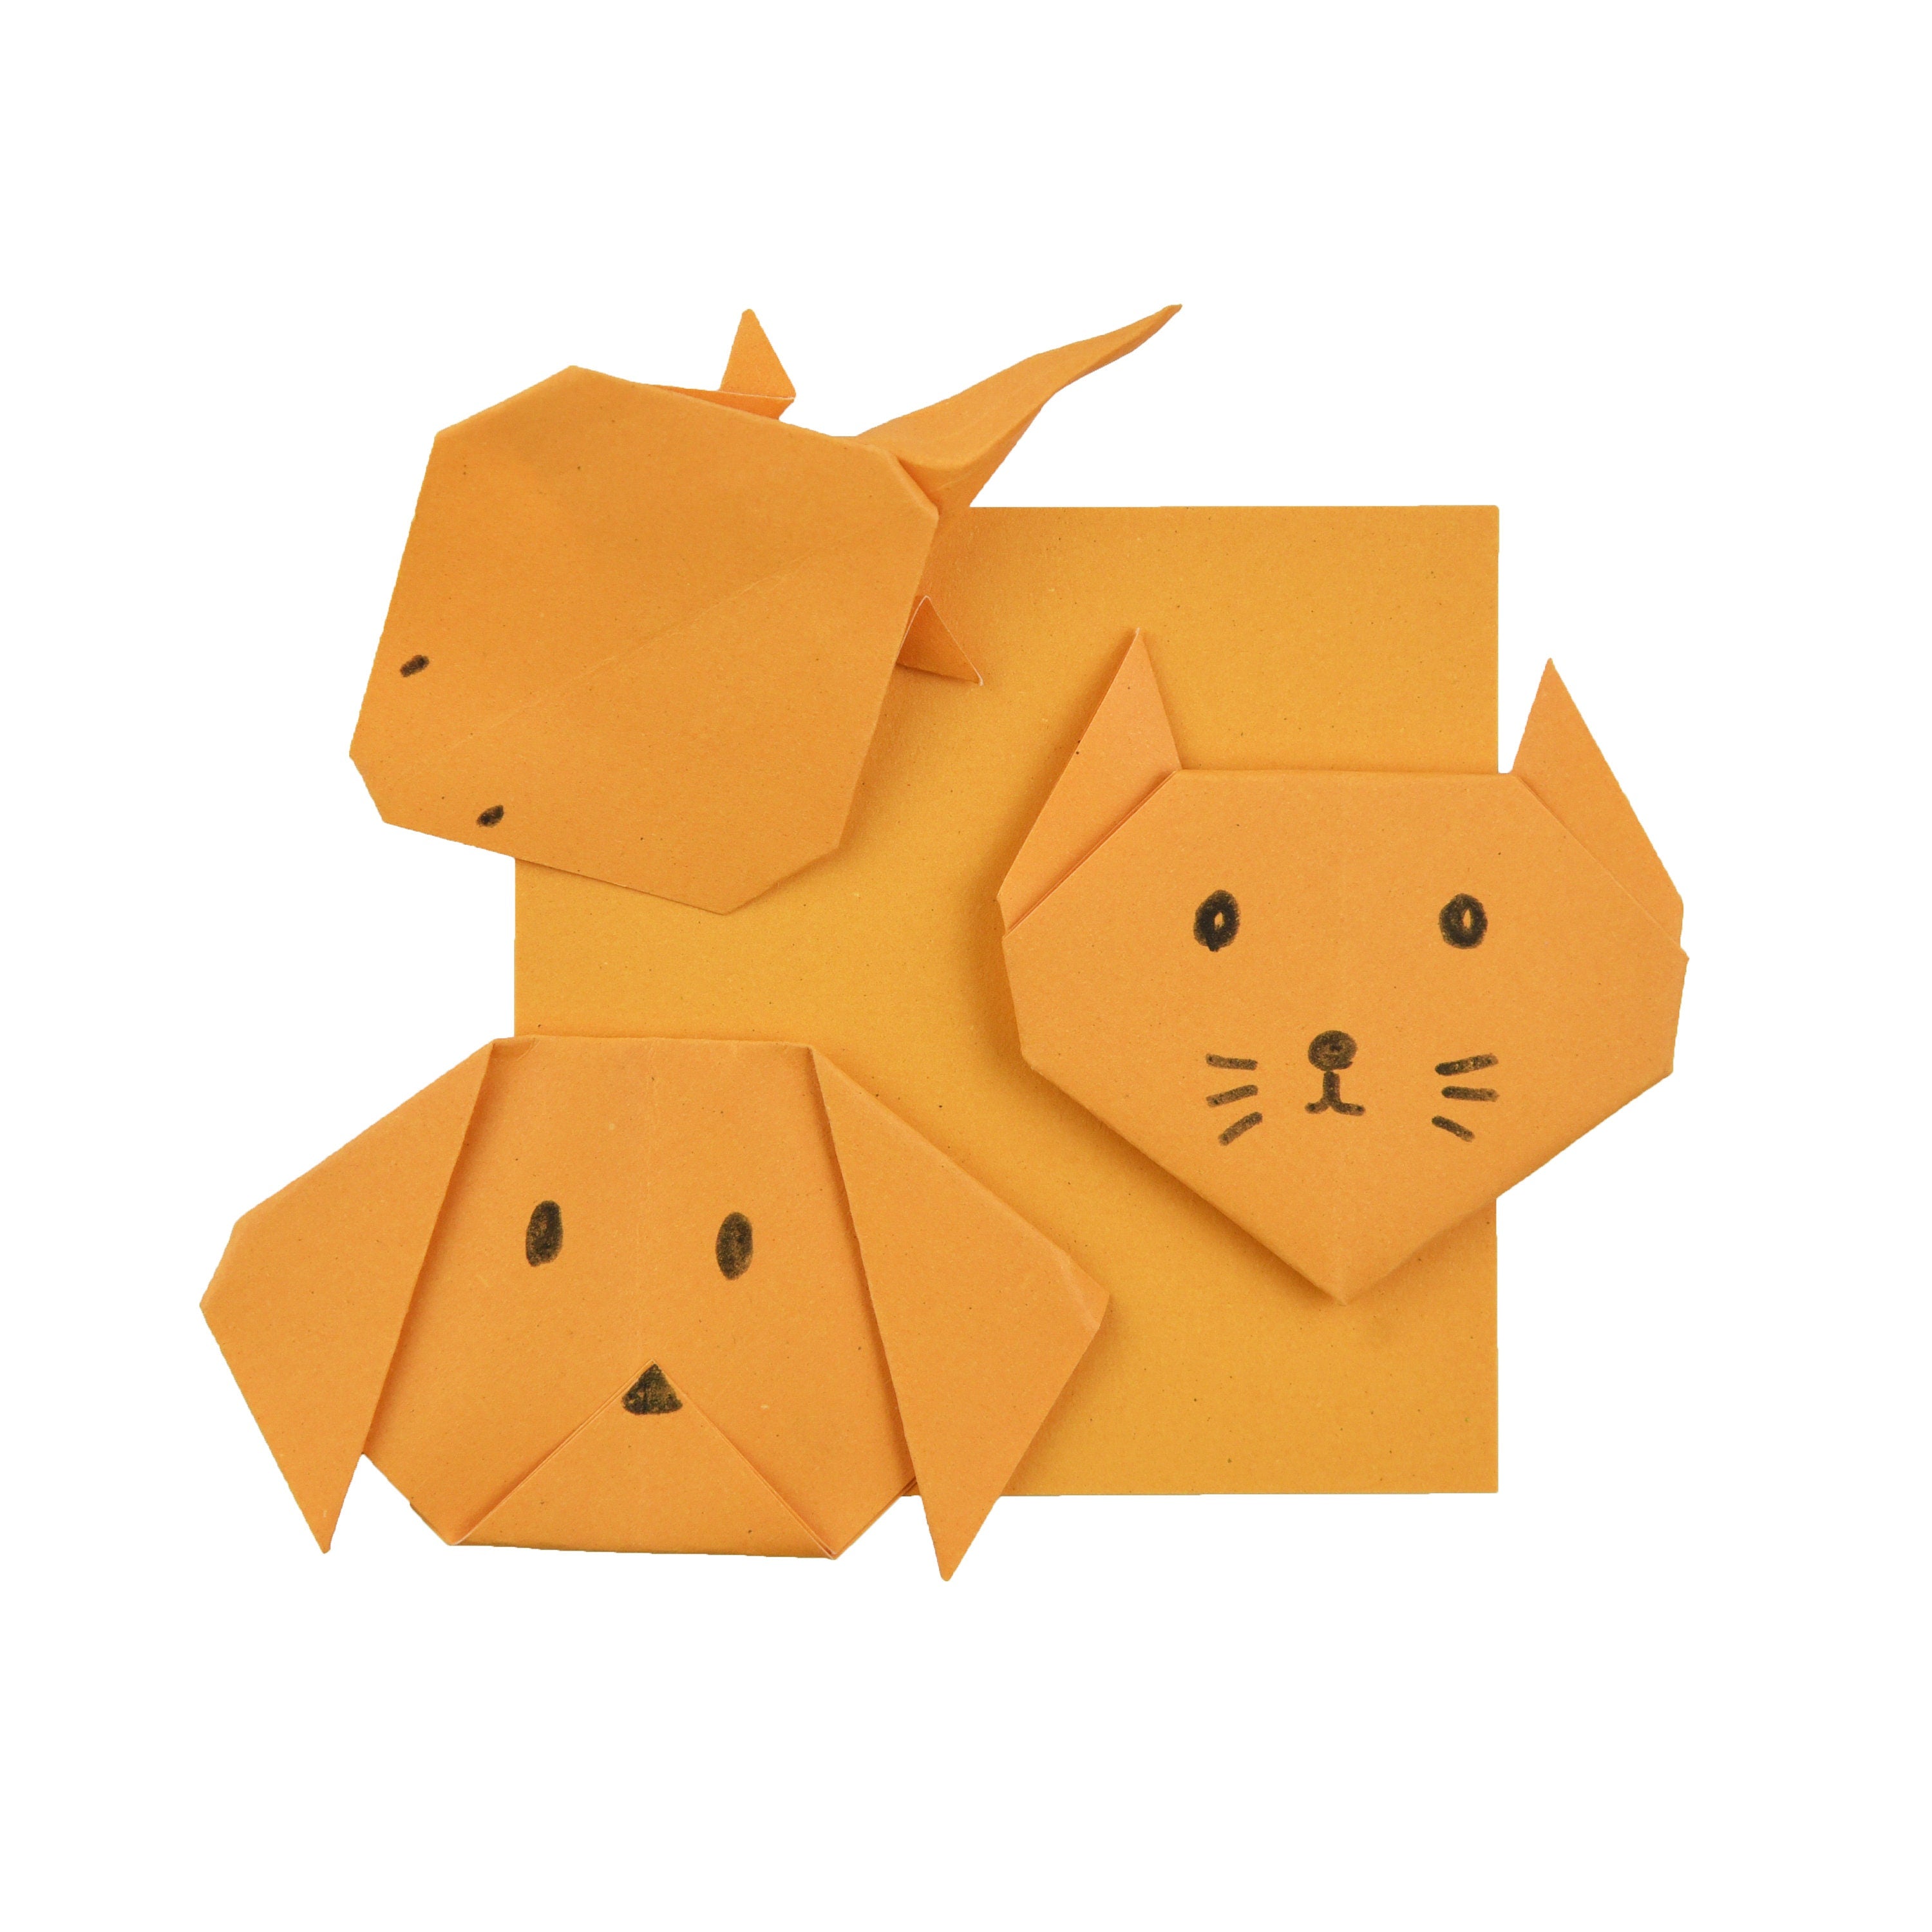 100 fogli di carta origami - 3x3 pollici - Confezione di carta quadrata per piegare, gru origami e decorazioni - S27